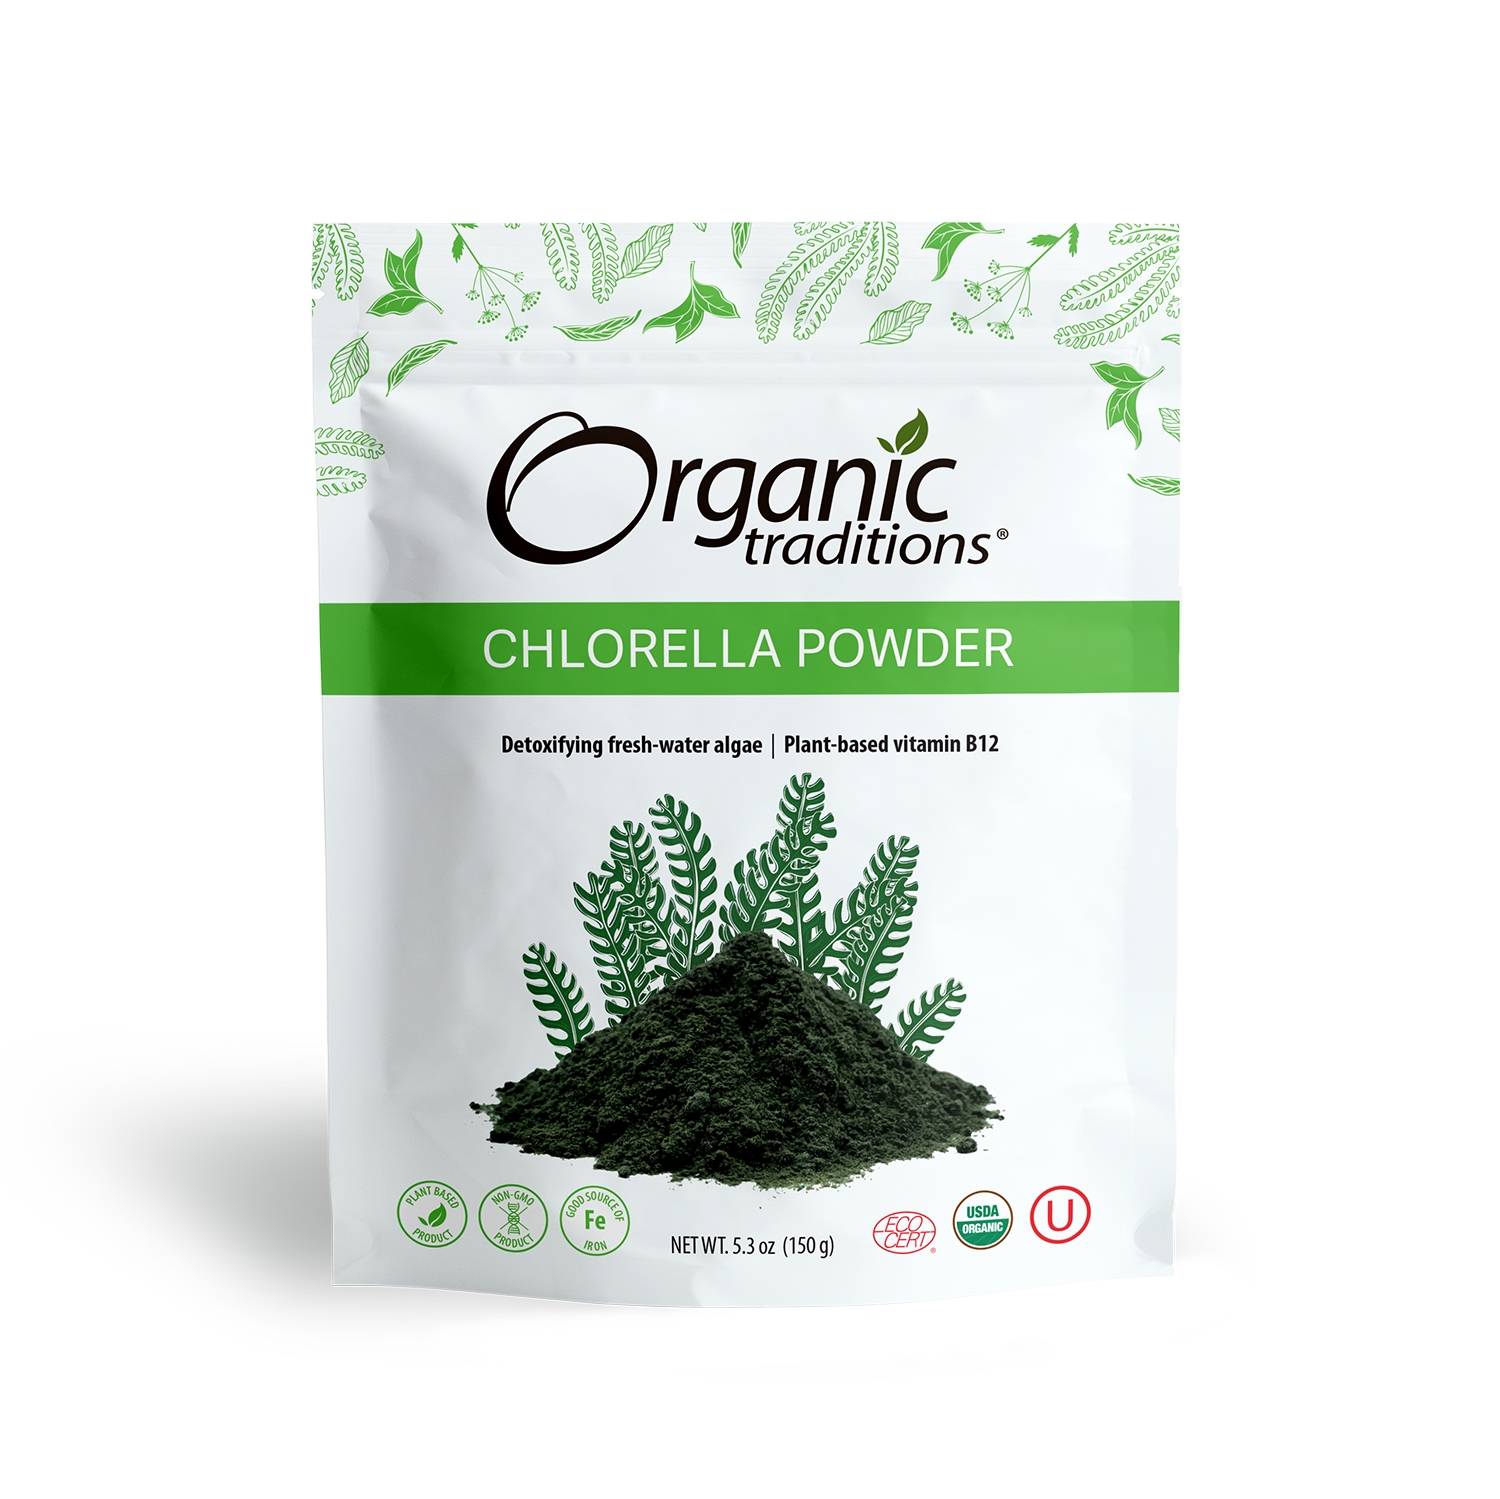 organic traditions chlorella powder front of bag image